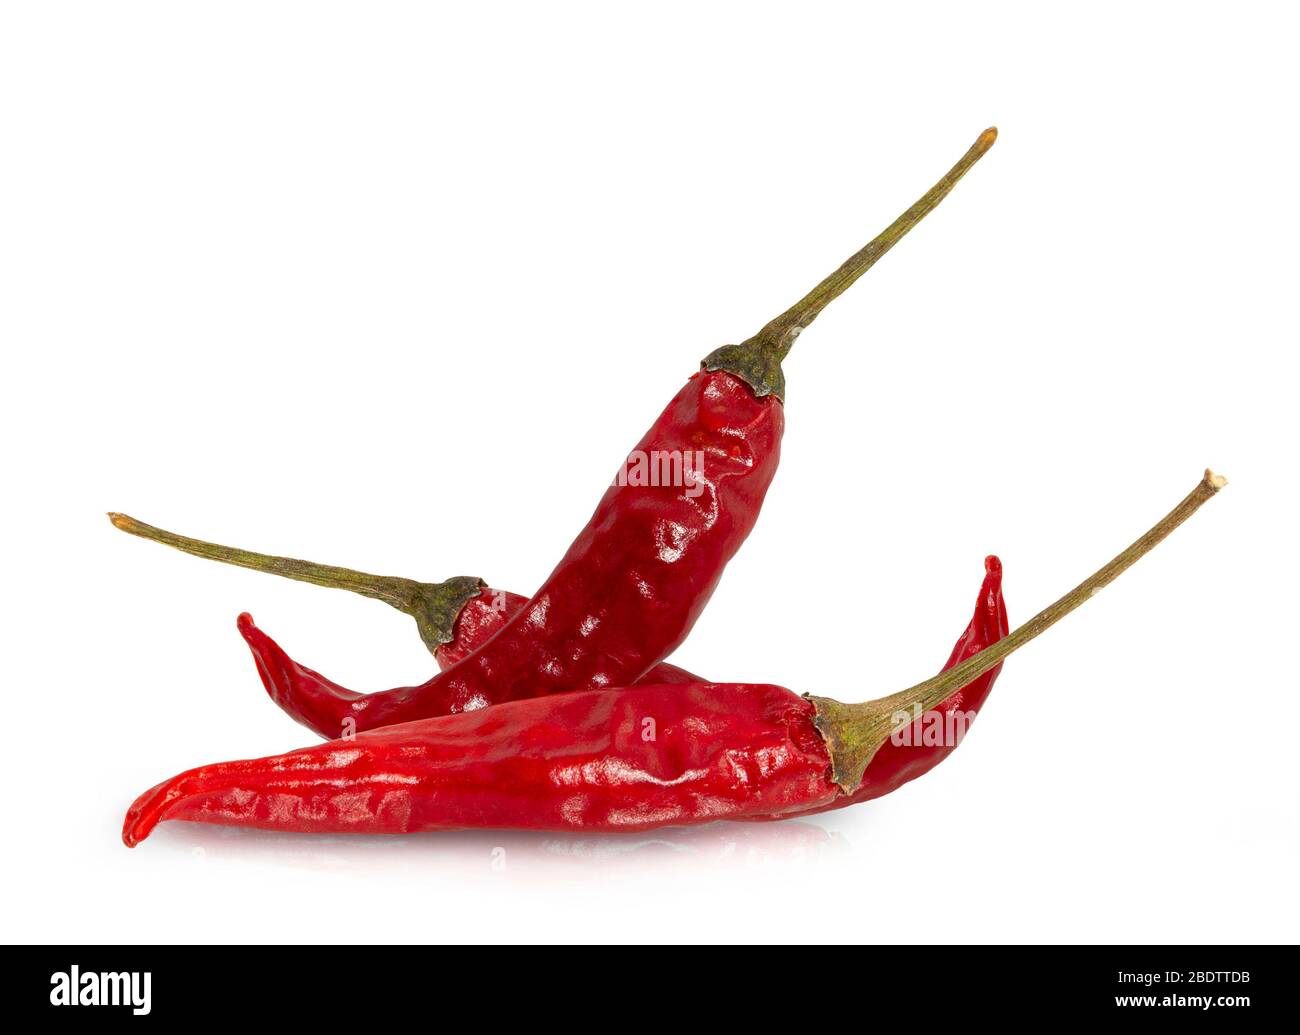 Getrocknete rote Chili- oder Chili-Cayenne-Paprika isoliert auf weißem Hintergrund.Beschneideweg. Stockfoto